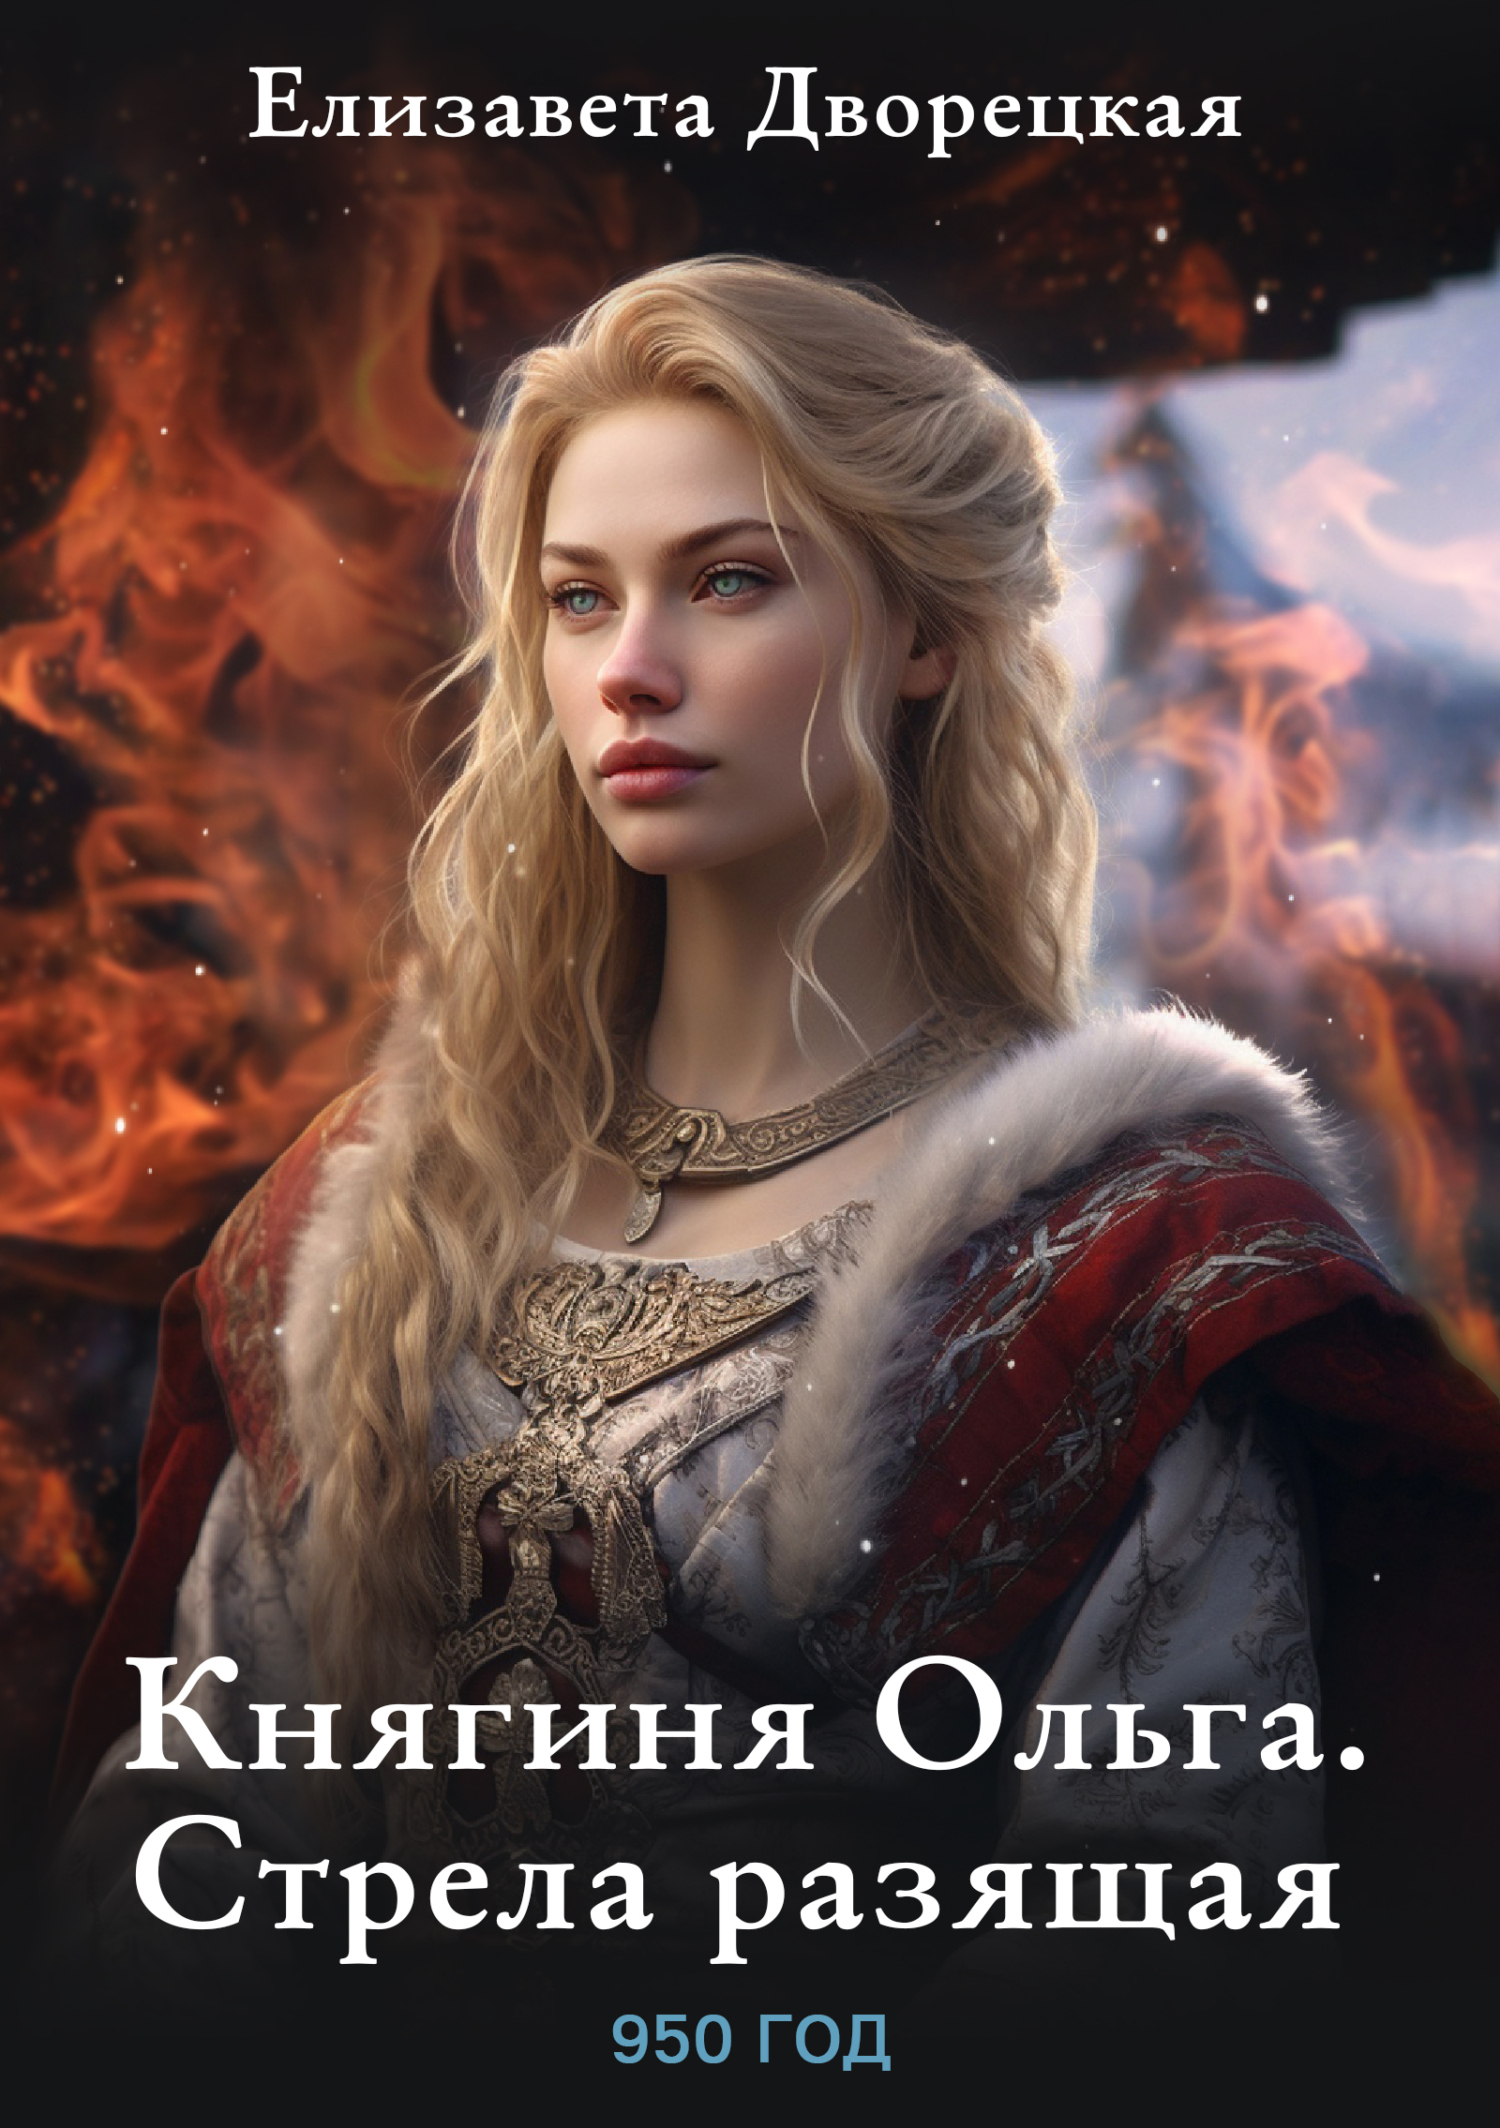 Ольга, княгиня русской дружины